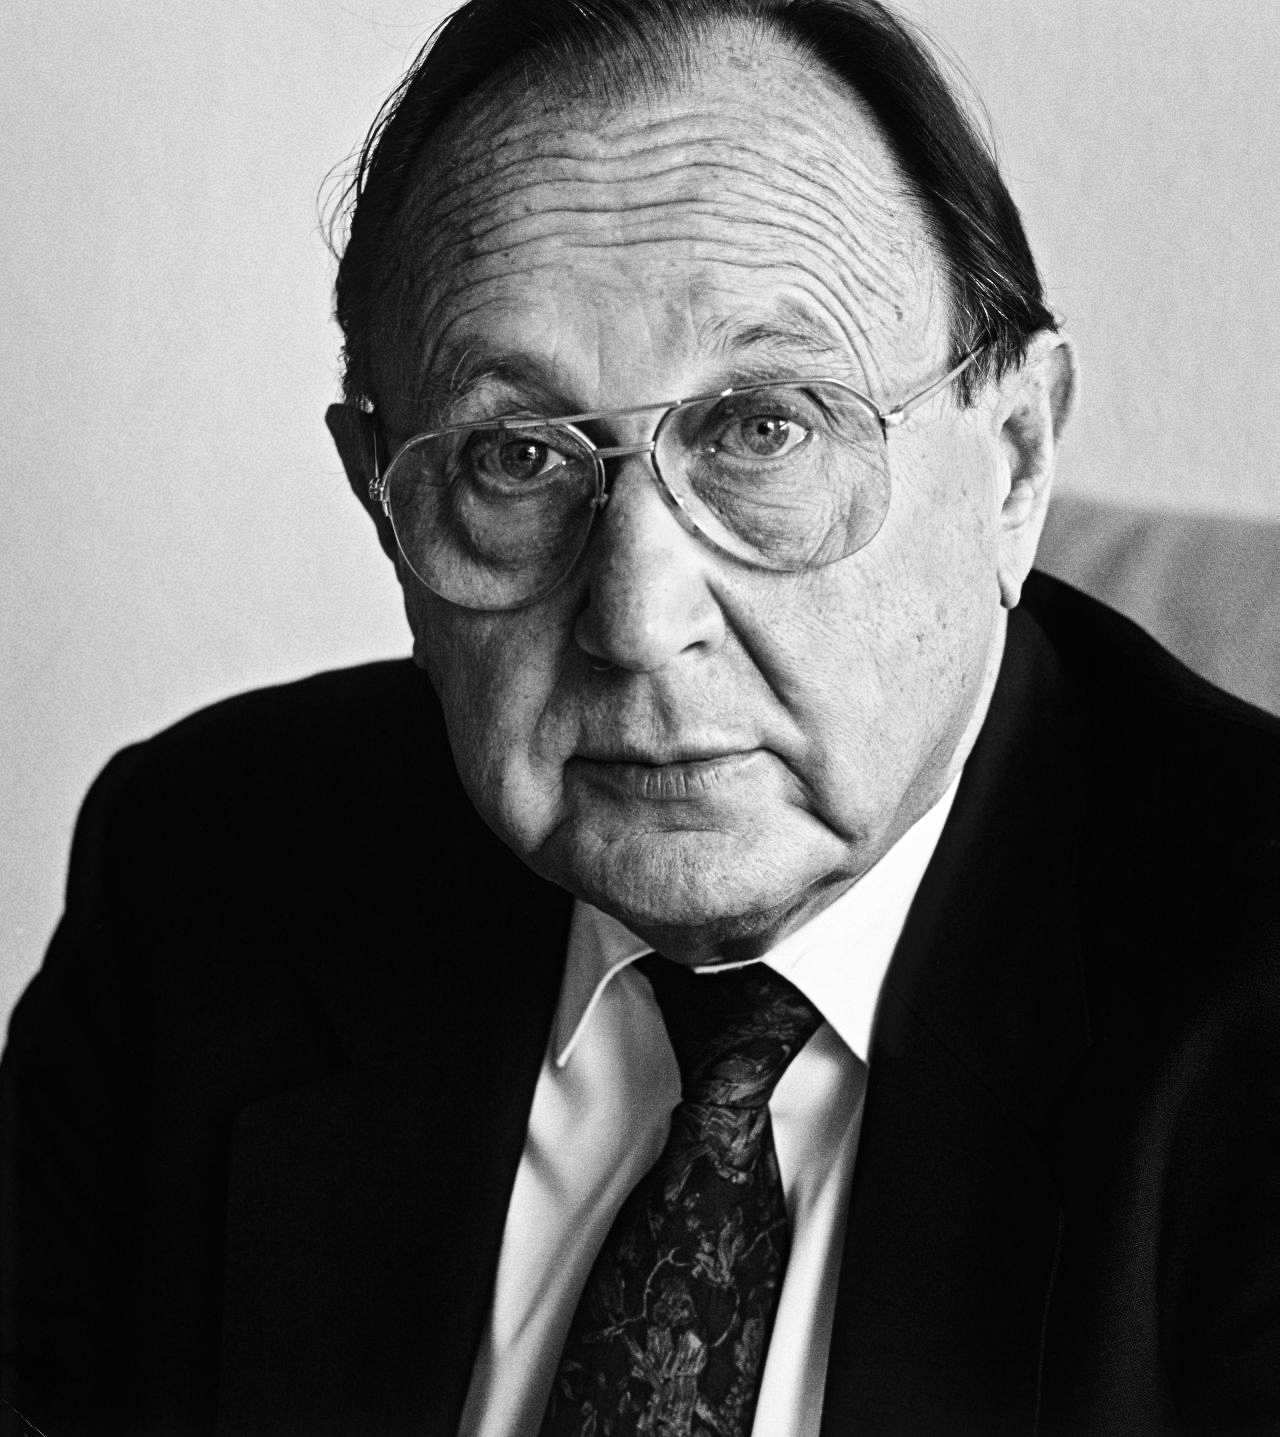 Porträtfotografie von FDP-Politiker Hans-Dietrich Genscher, 1992.